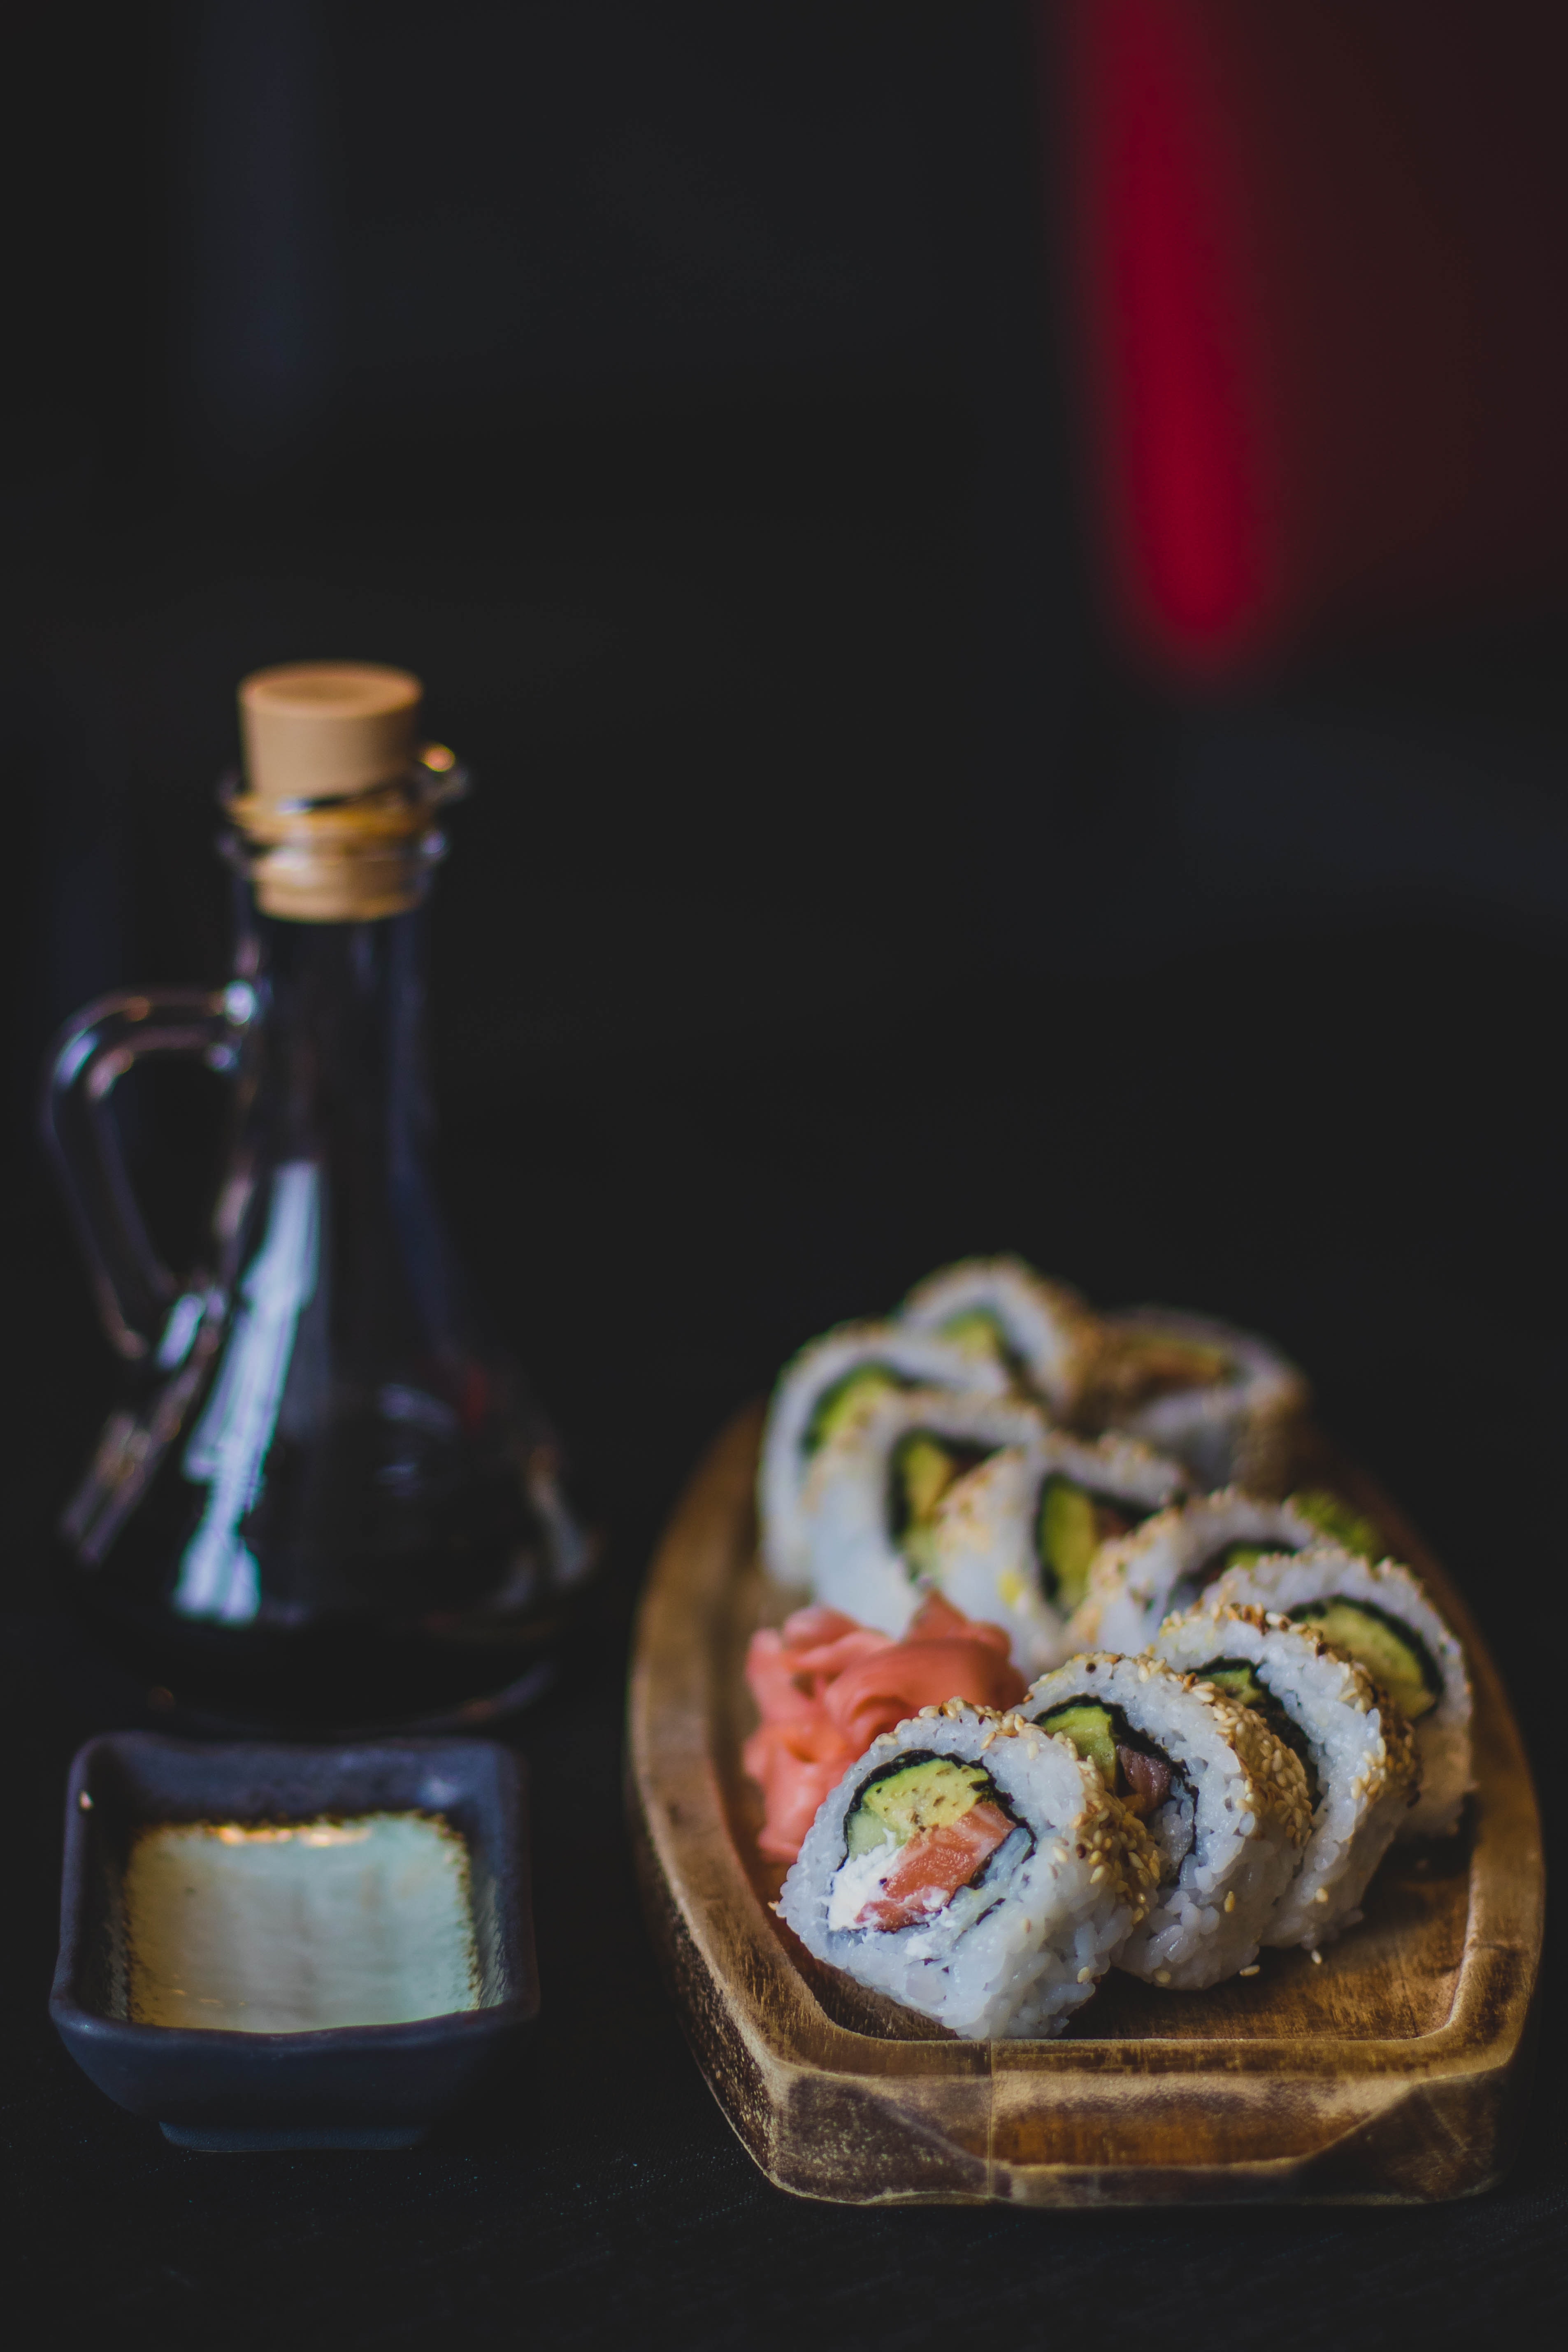 Sushi bilder und fotos